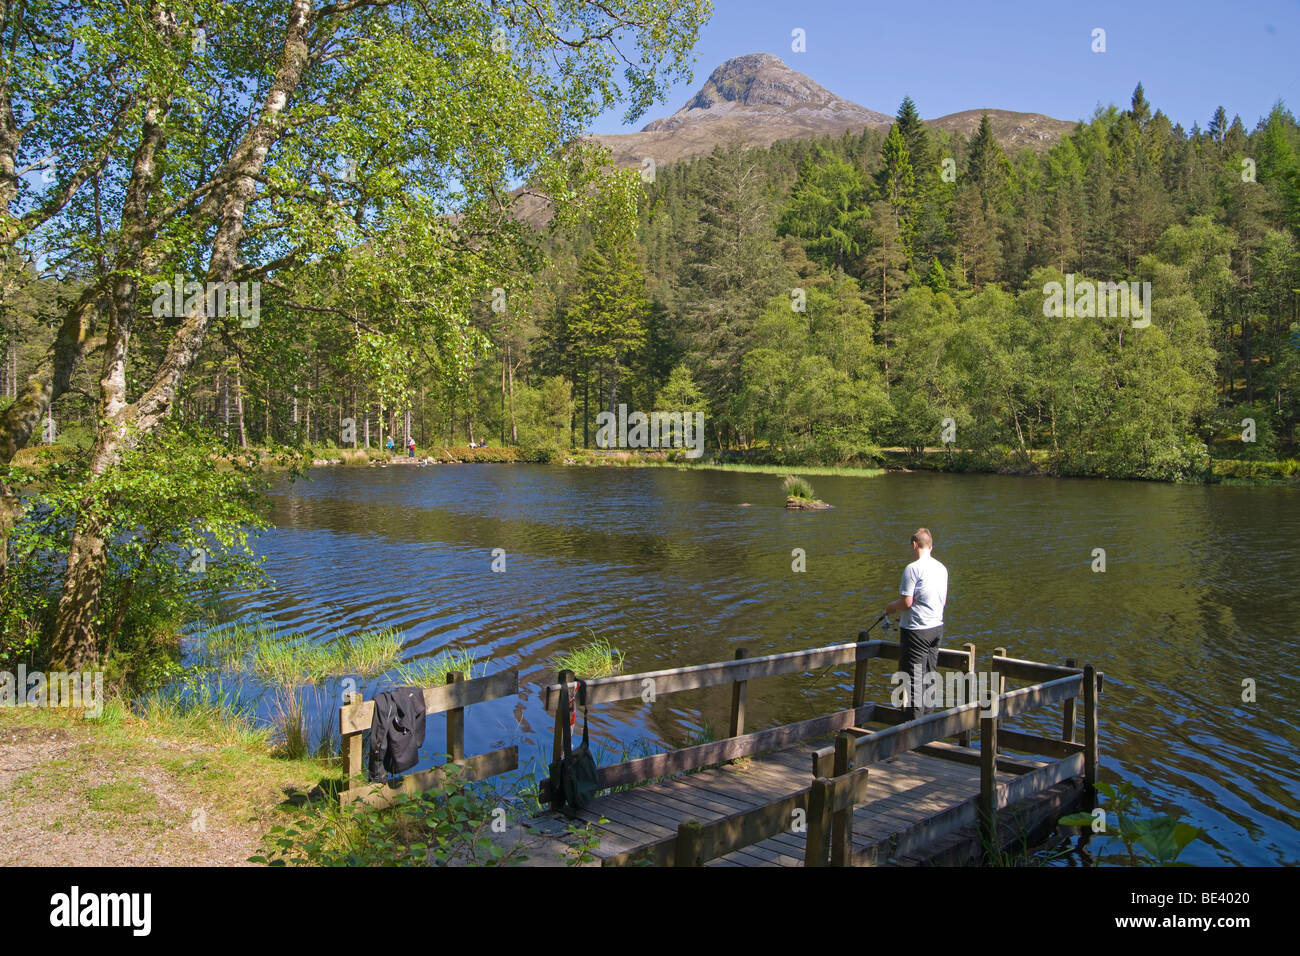 Lochan Glencoe, pêcheur, Pap of Glencoe Glencoe, forêt, rivière de l'Europe, région des Highlands, en Écosse. Juin, 2009 Banque D'Images